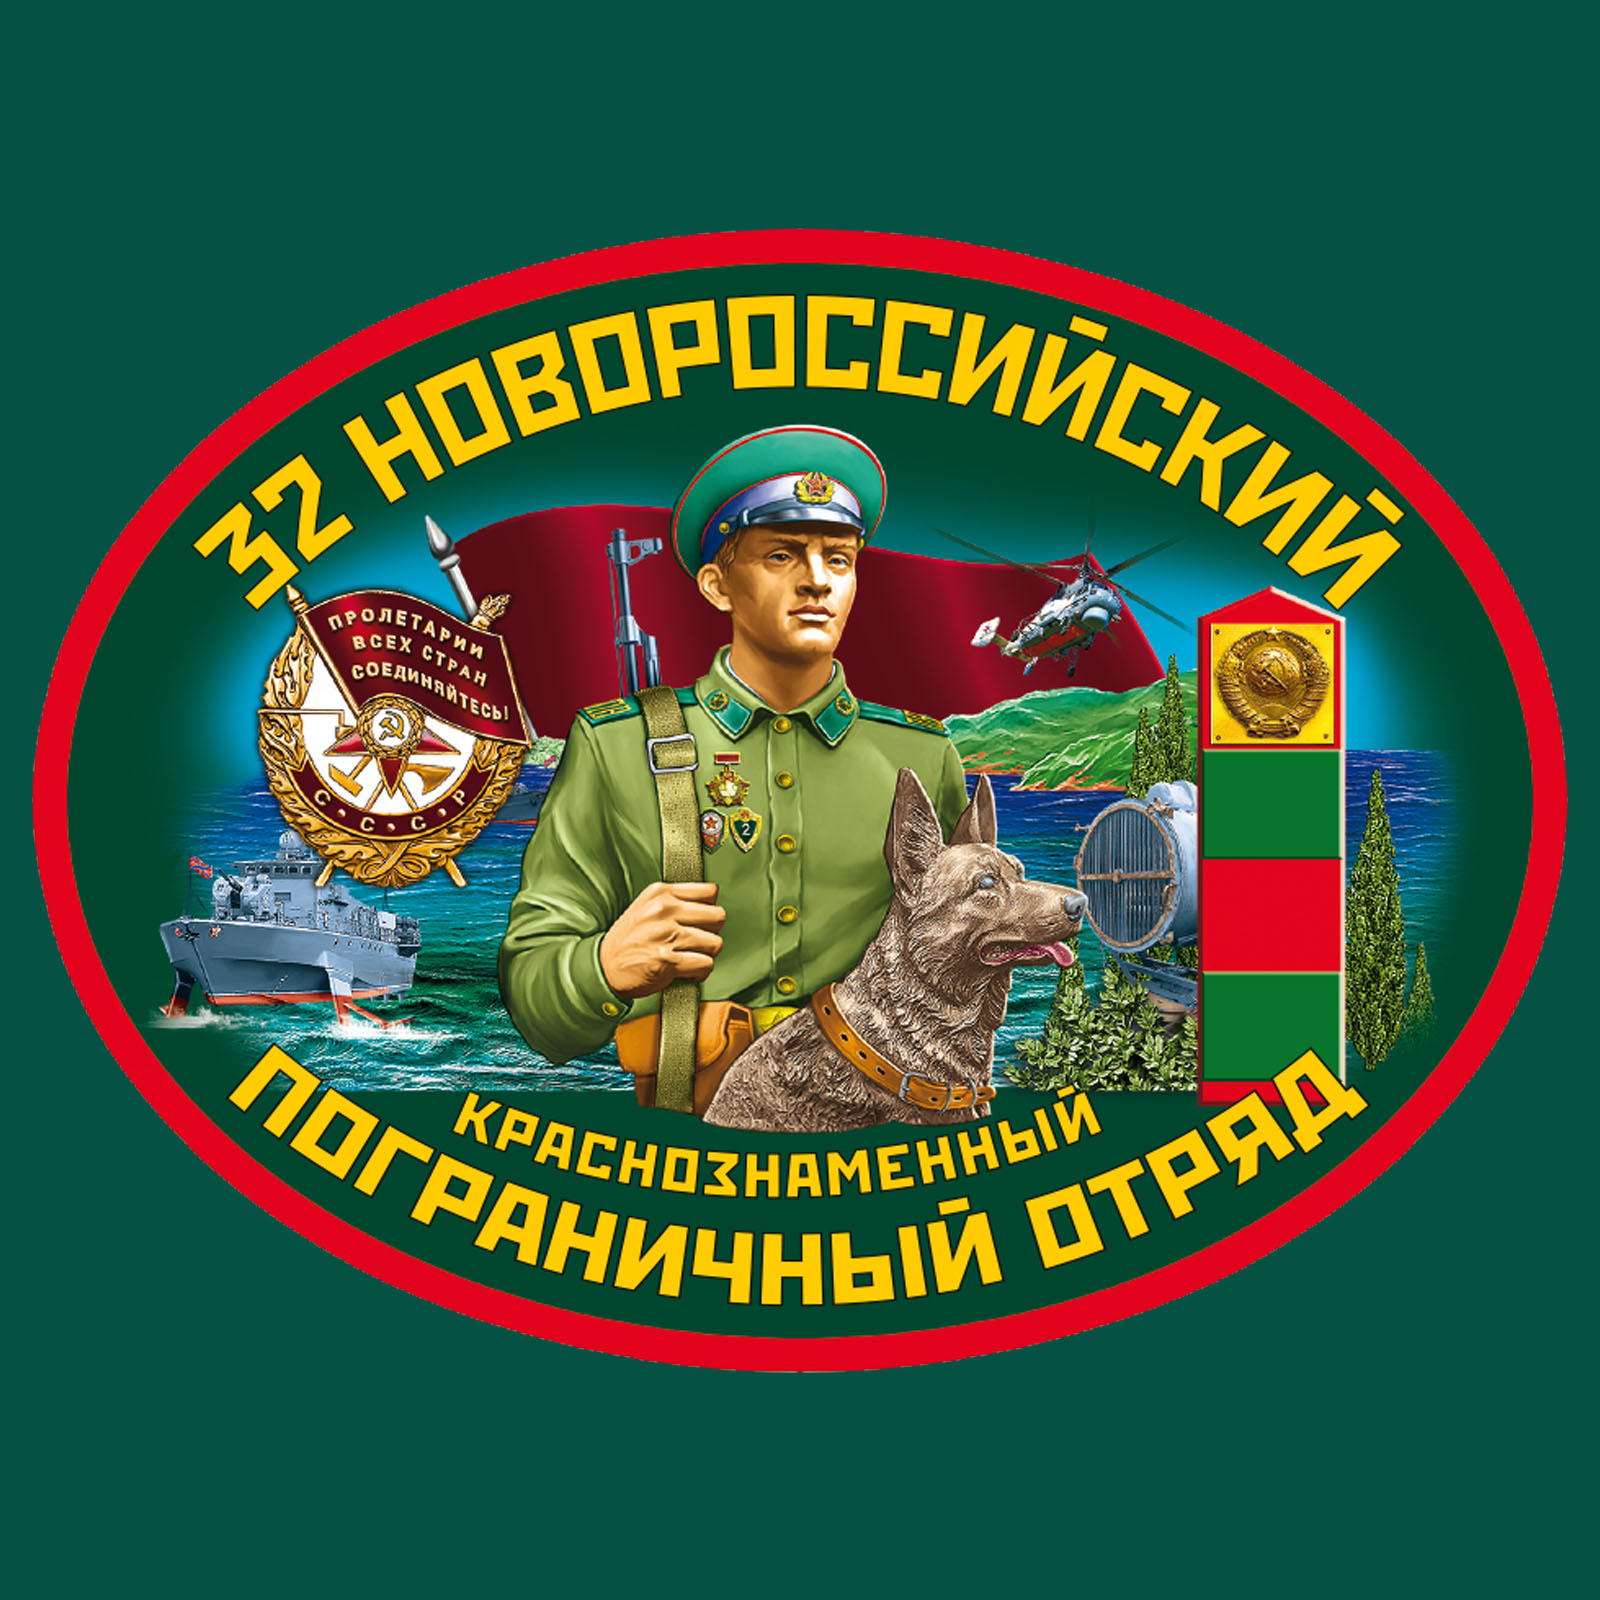 Зелёная футболка "32 Новороссийского пограничного отряда" 